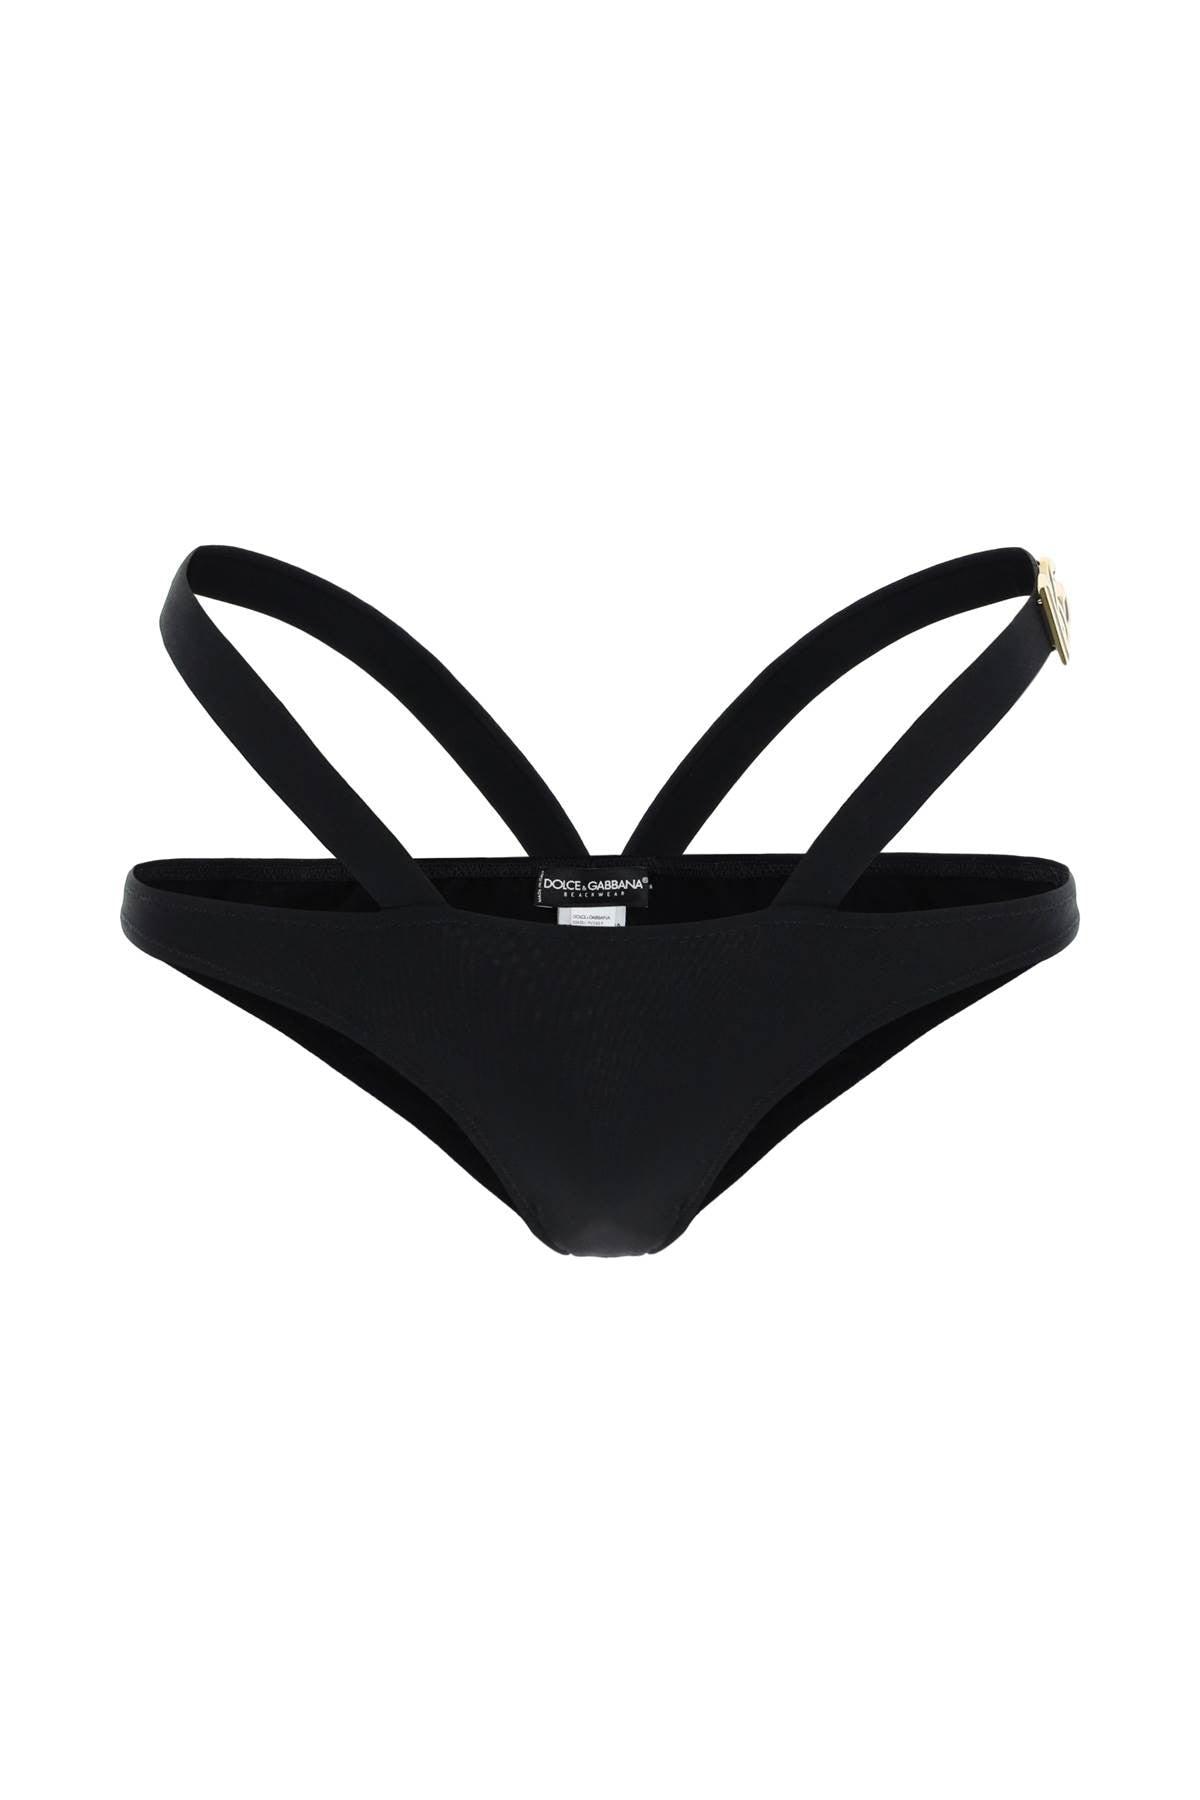 Dolce & Gabbana Double Band Bikini Bottom in Black | Lyst